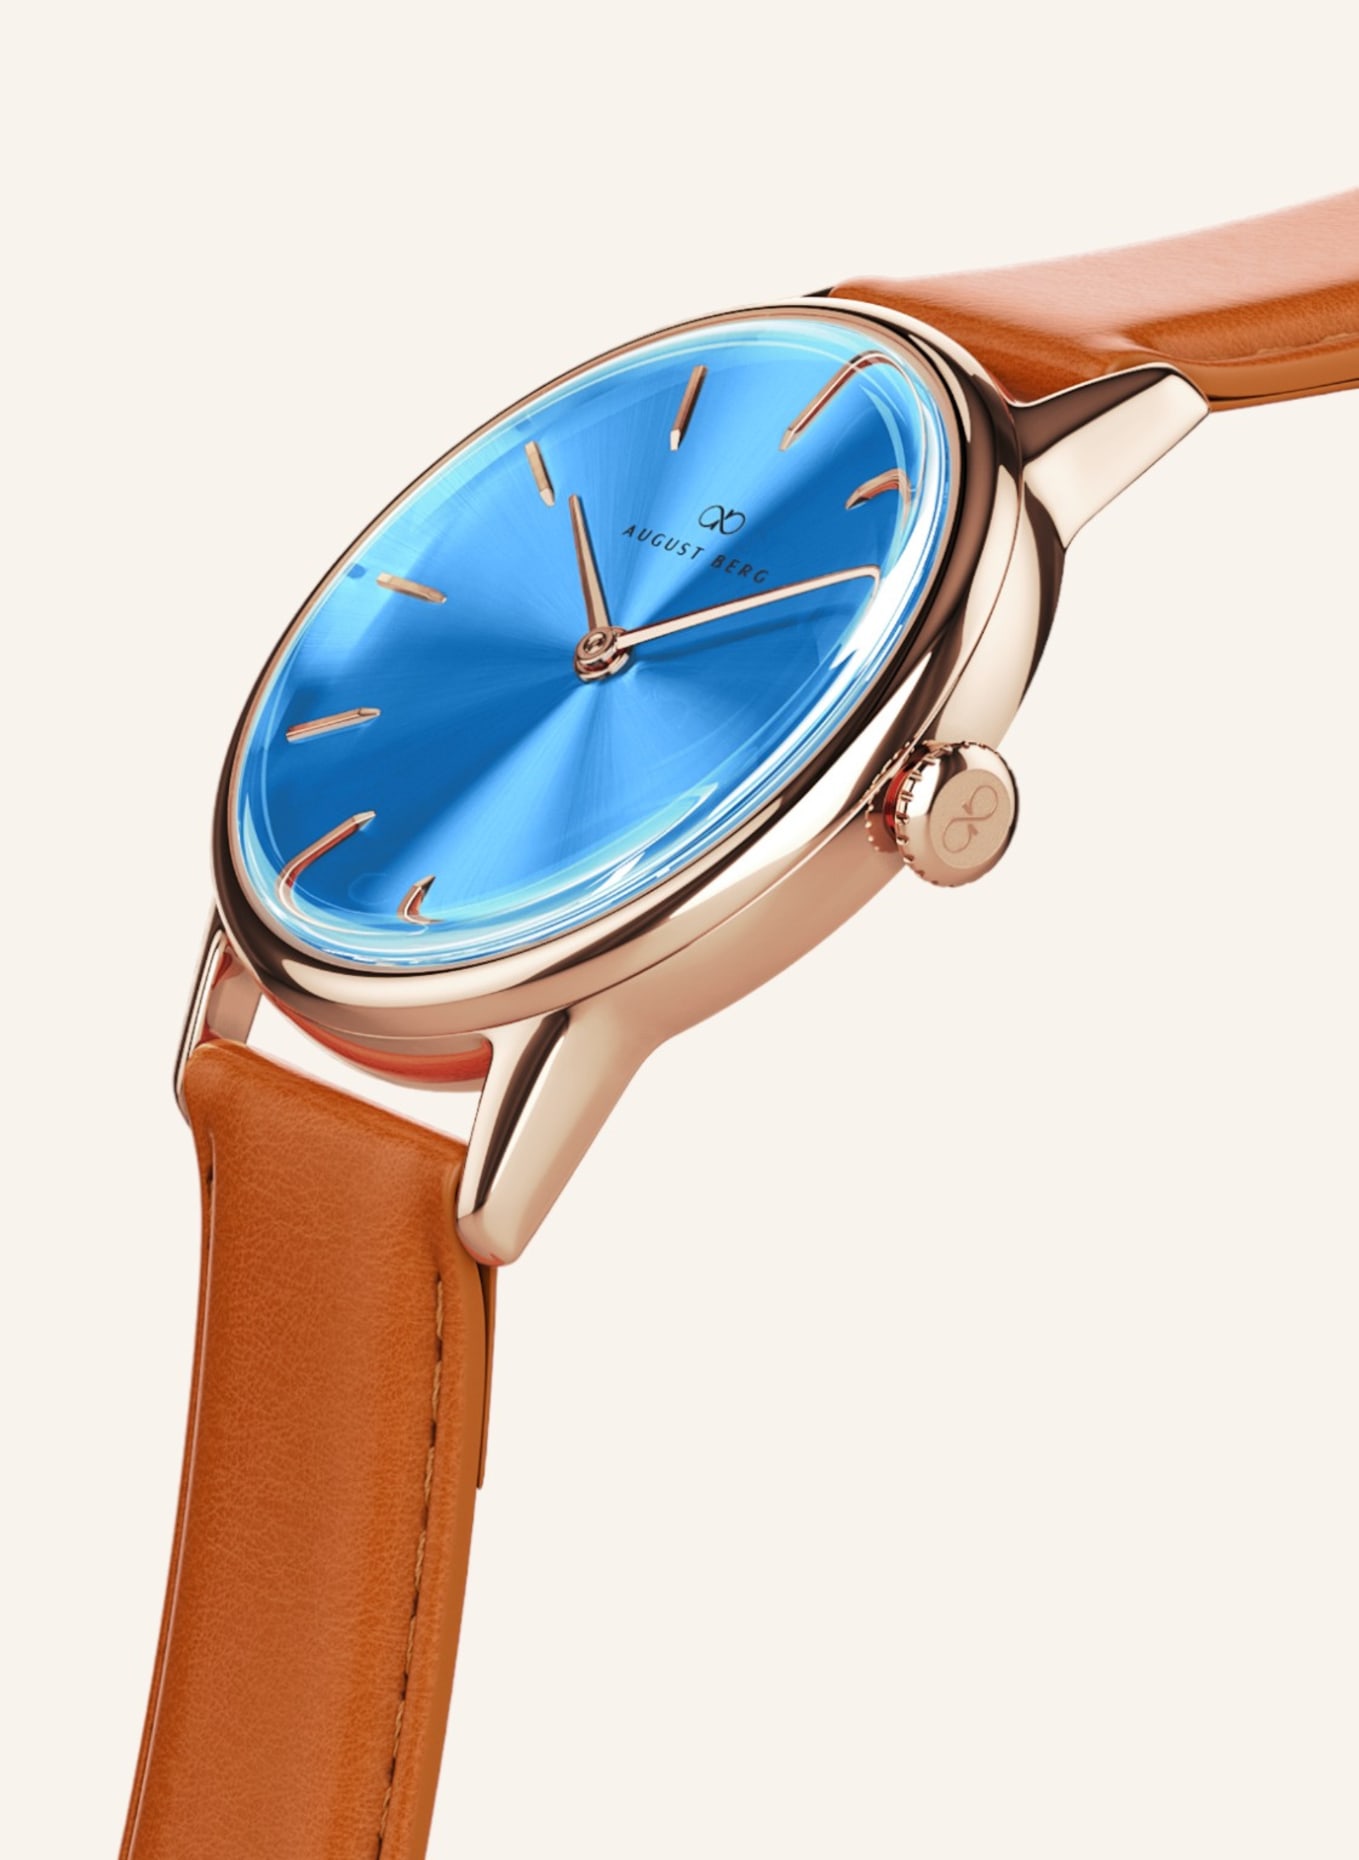 AUGUST BERG Armbanduhr Serenity, Farbe: HELLBLAU (Bild 2)